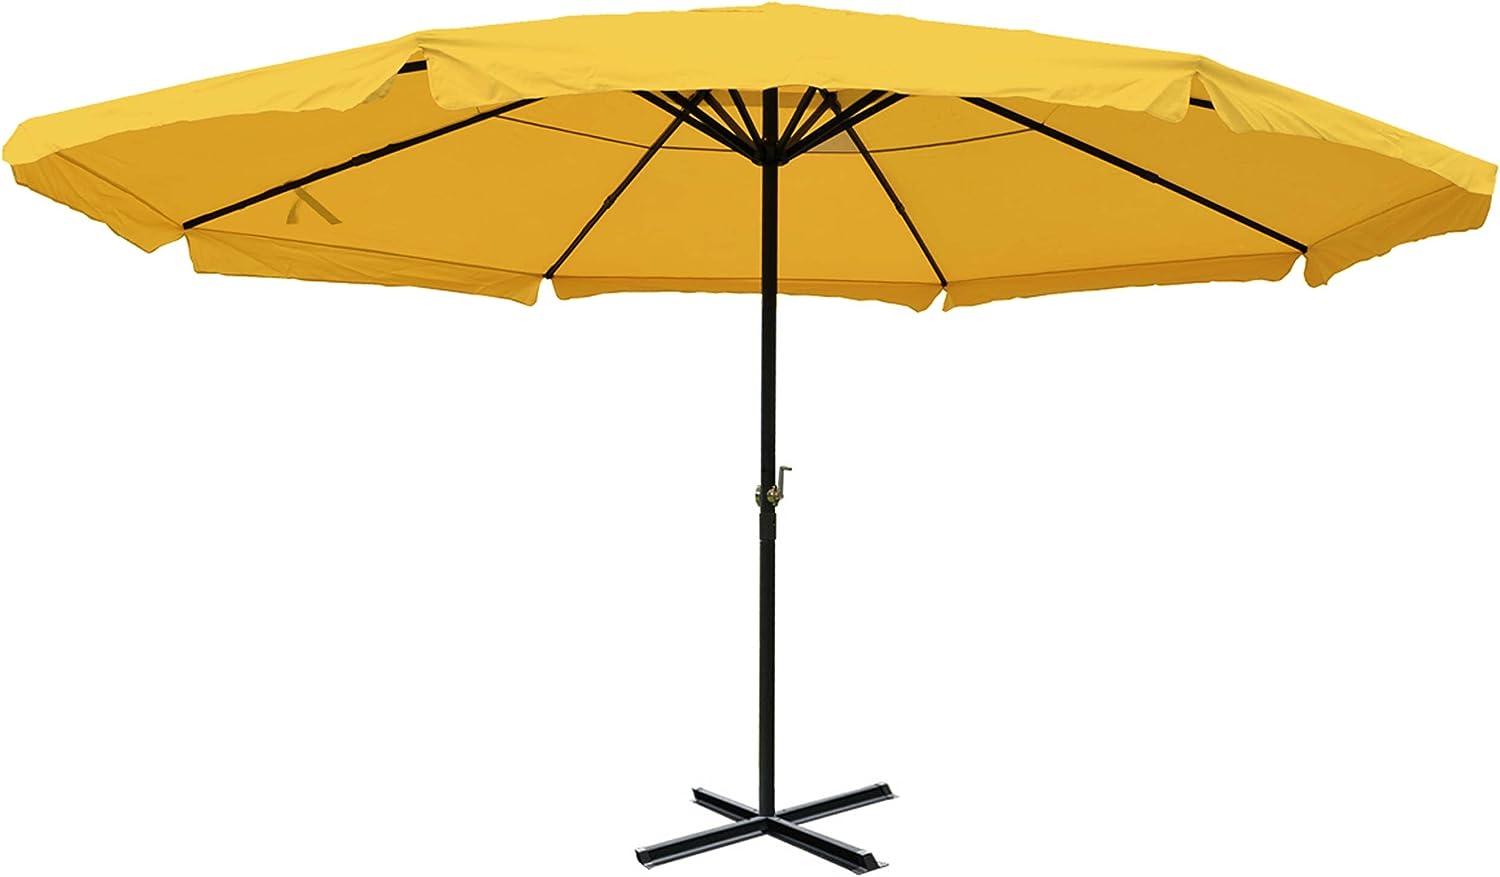 Sonnenschirm Meran Pro, Gastronomie Marktschirm mit Volant Ø 5m Polyester/Alu 28kg ~ gelb ohne Ständer Bild 1